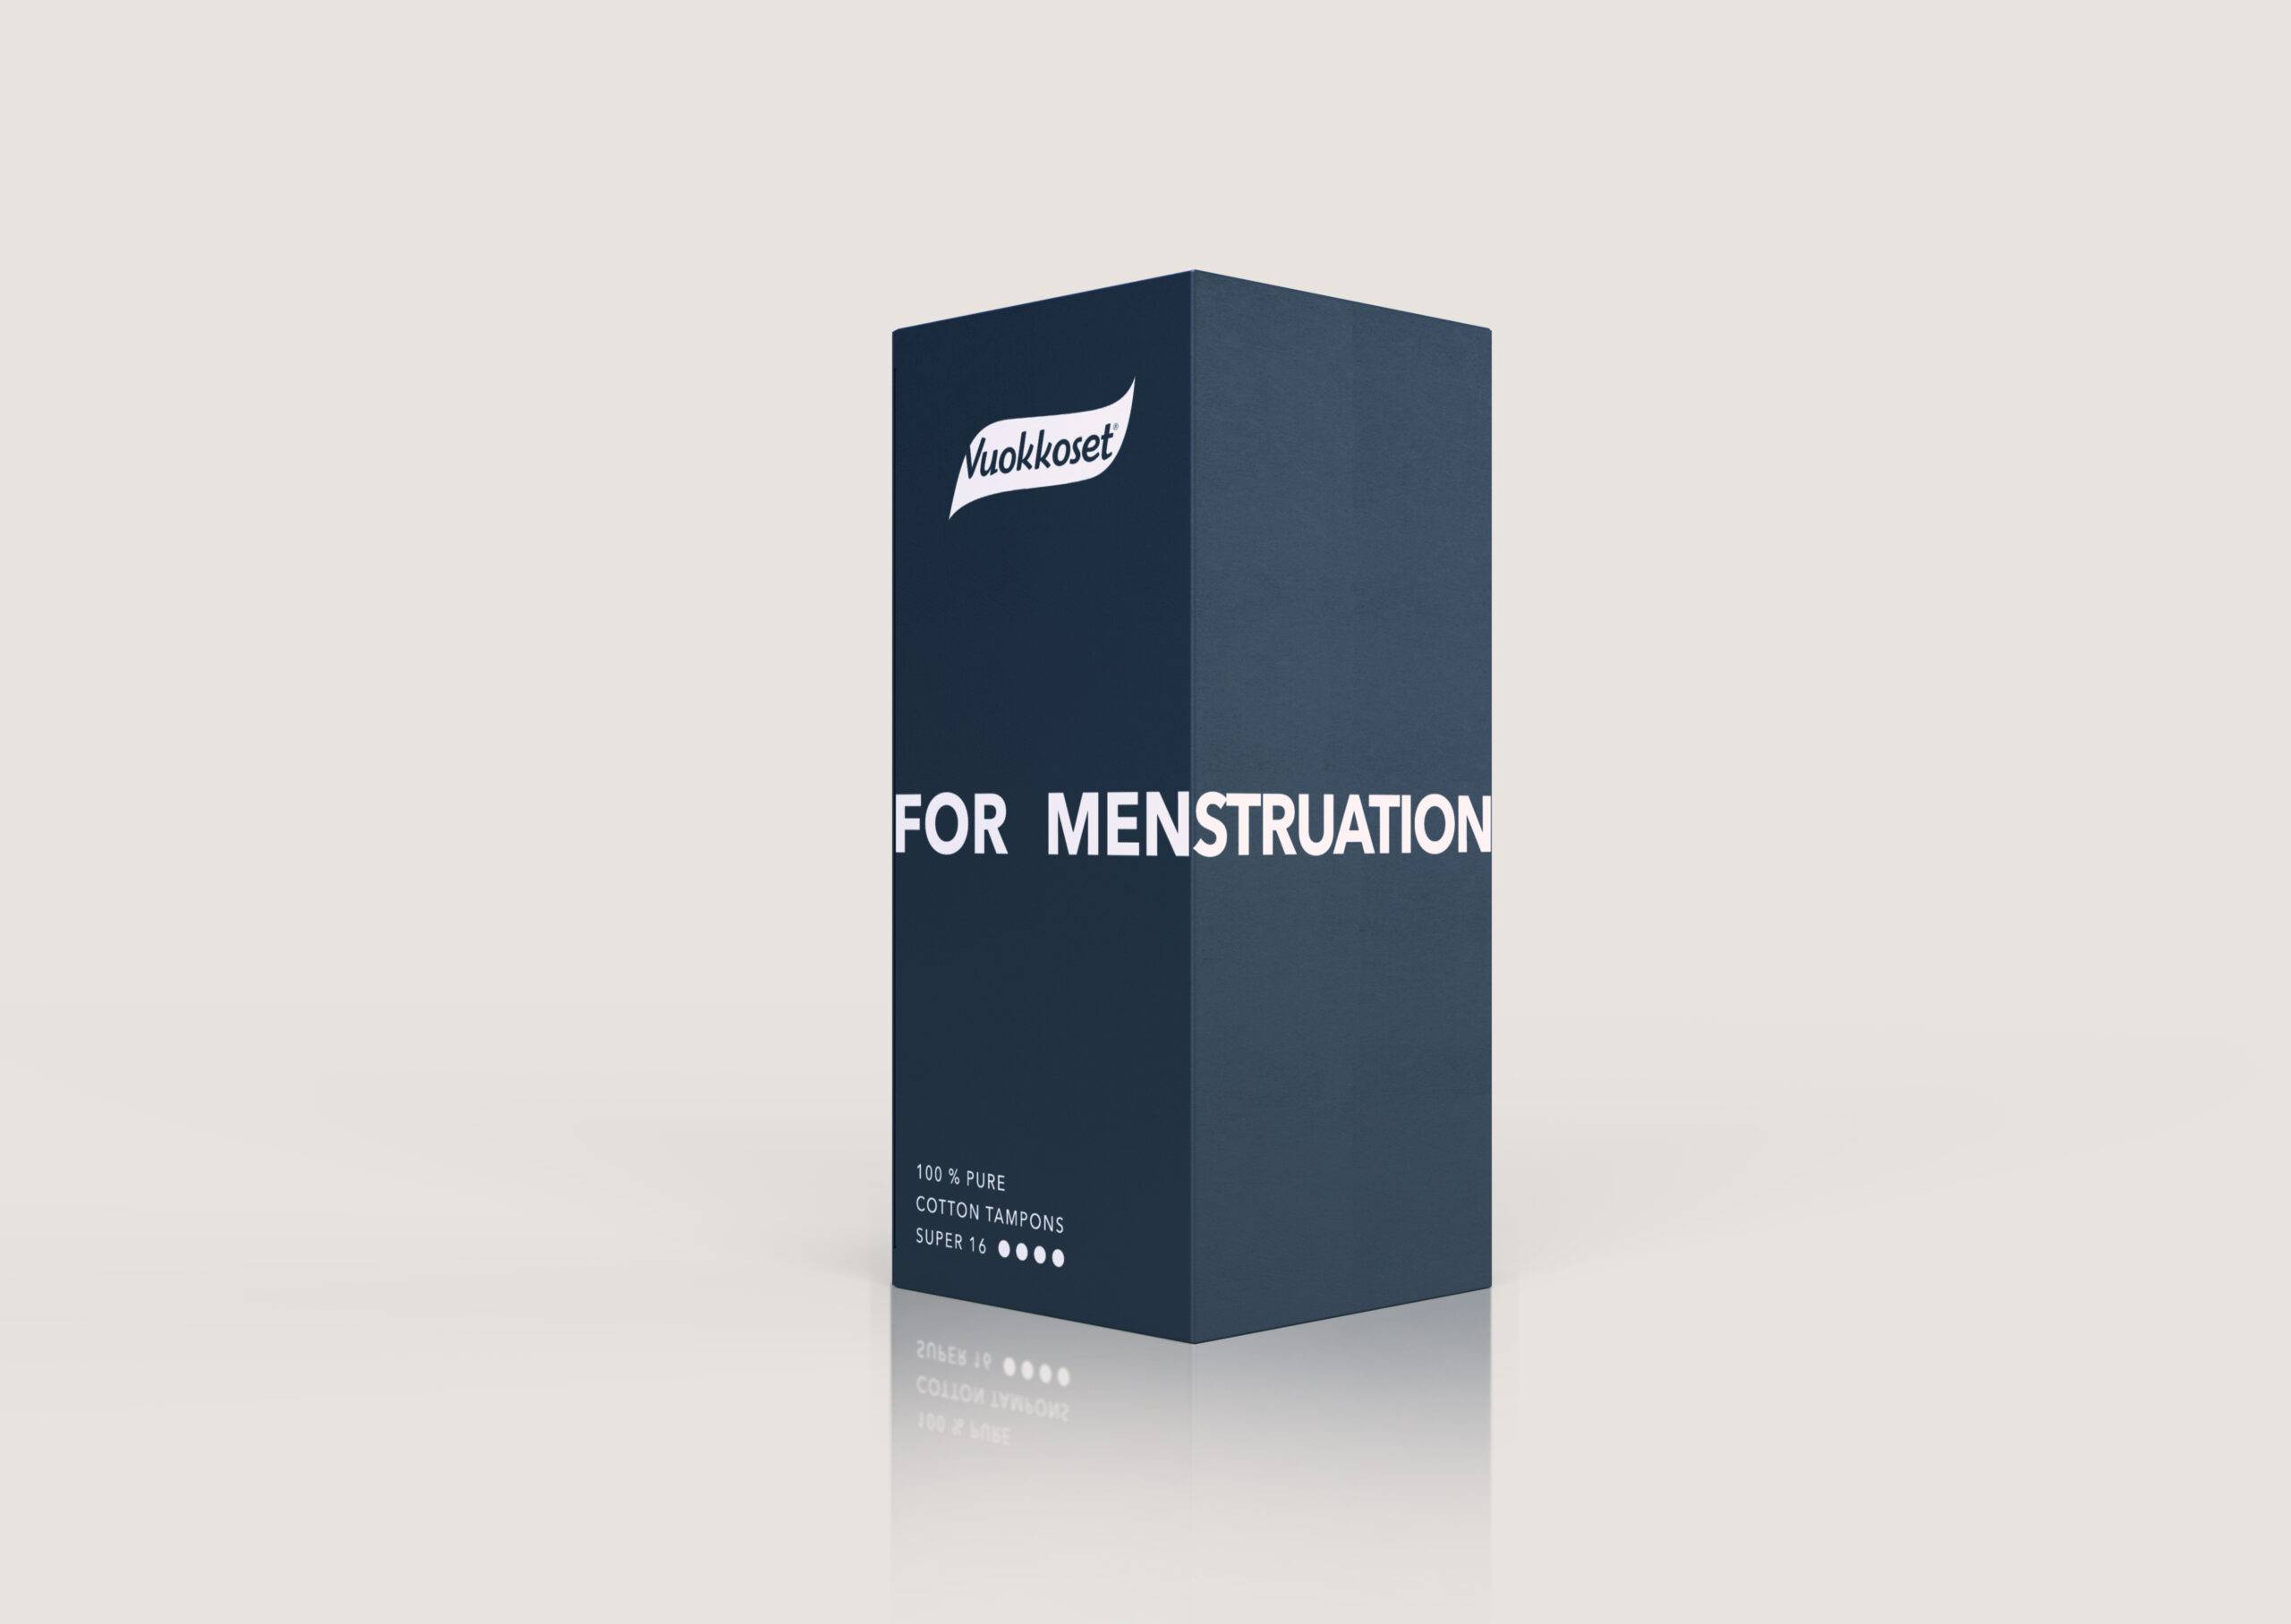 For MENstruation